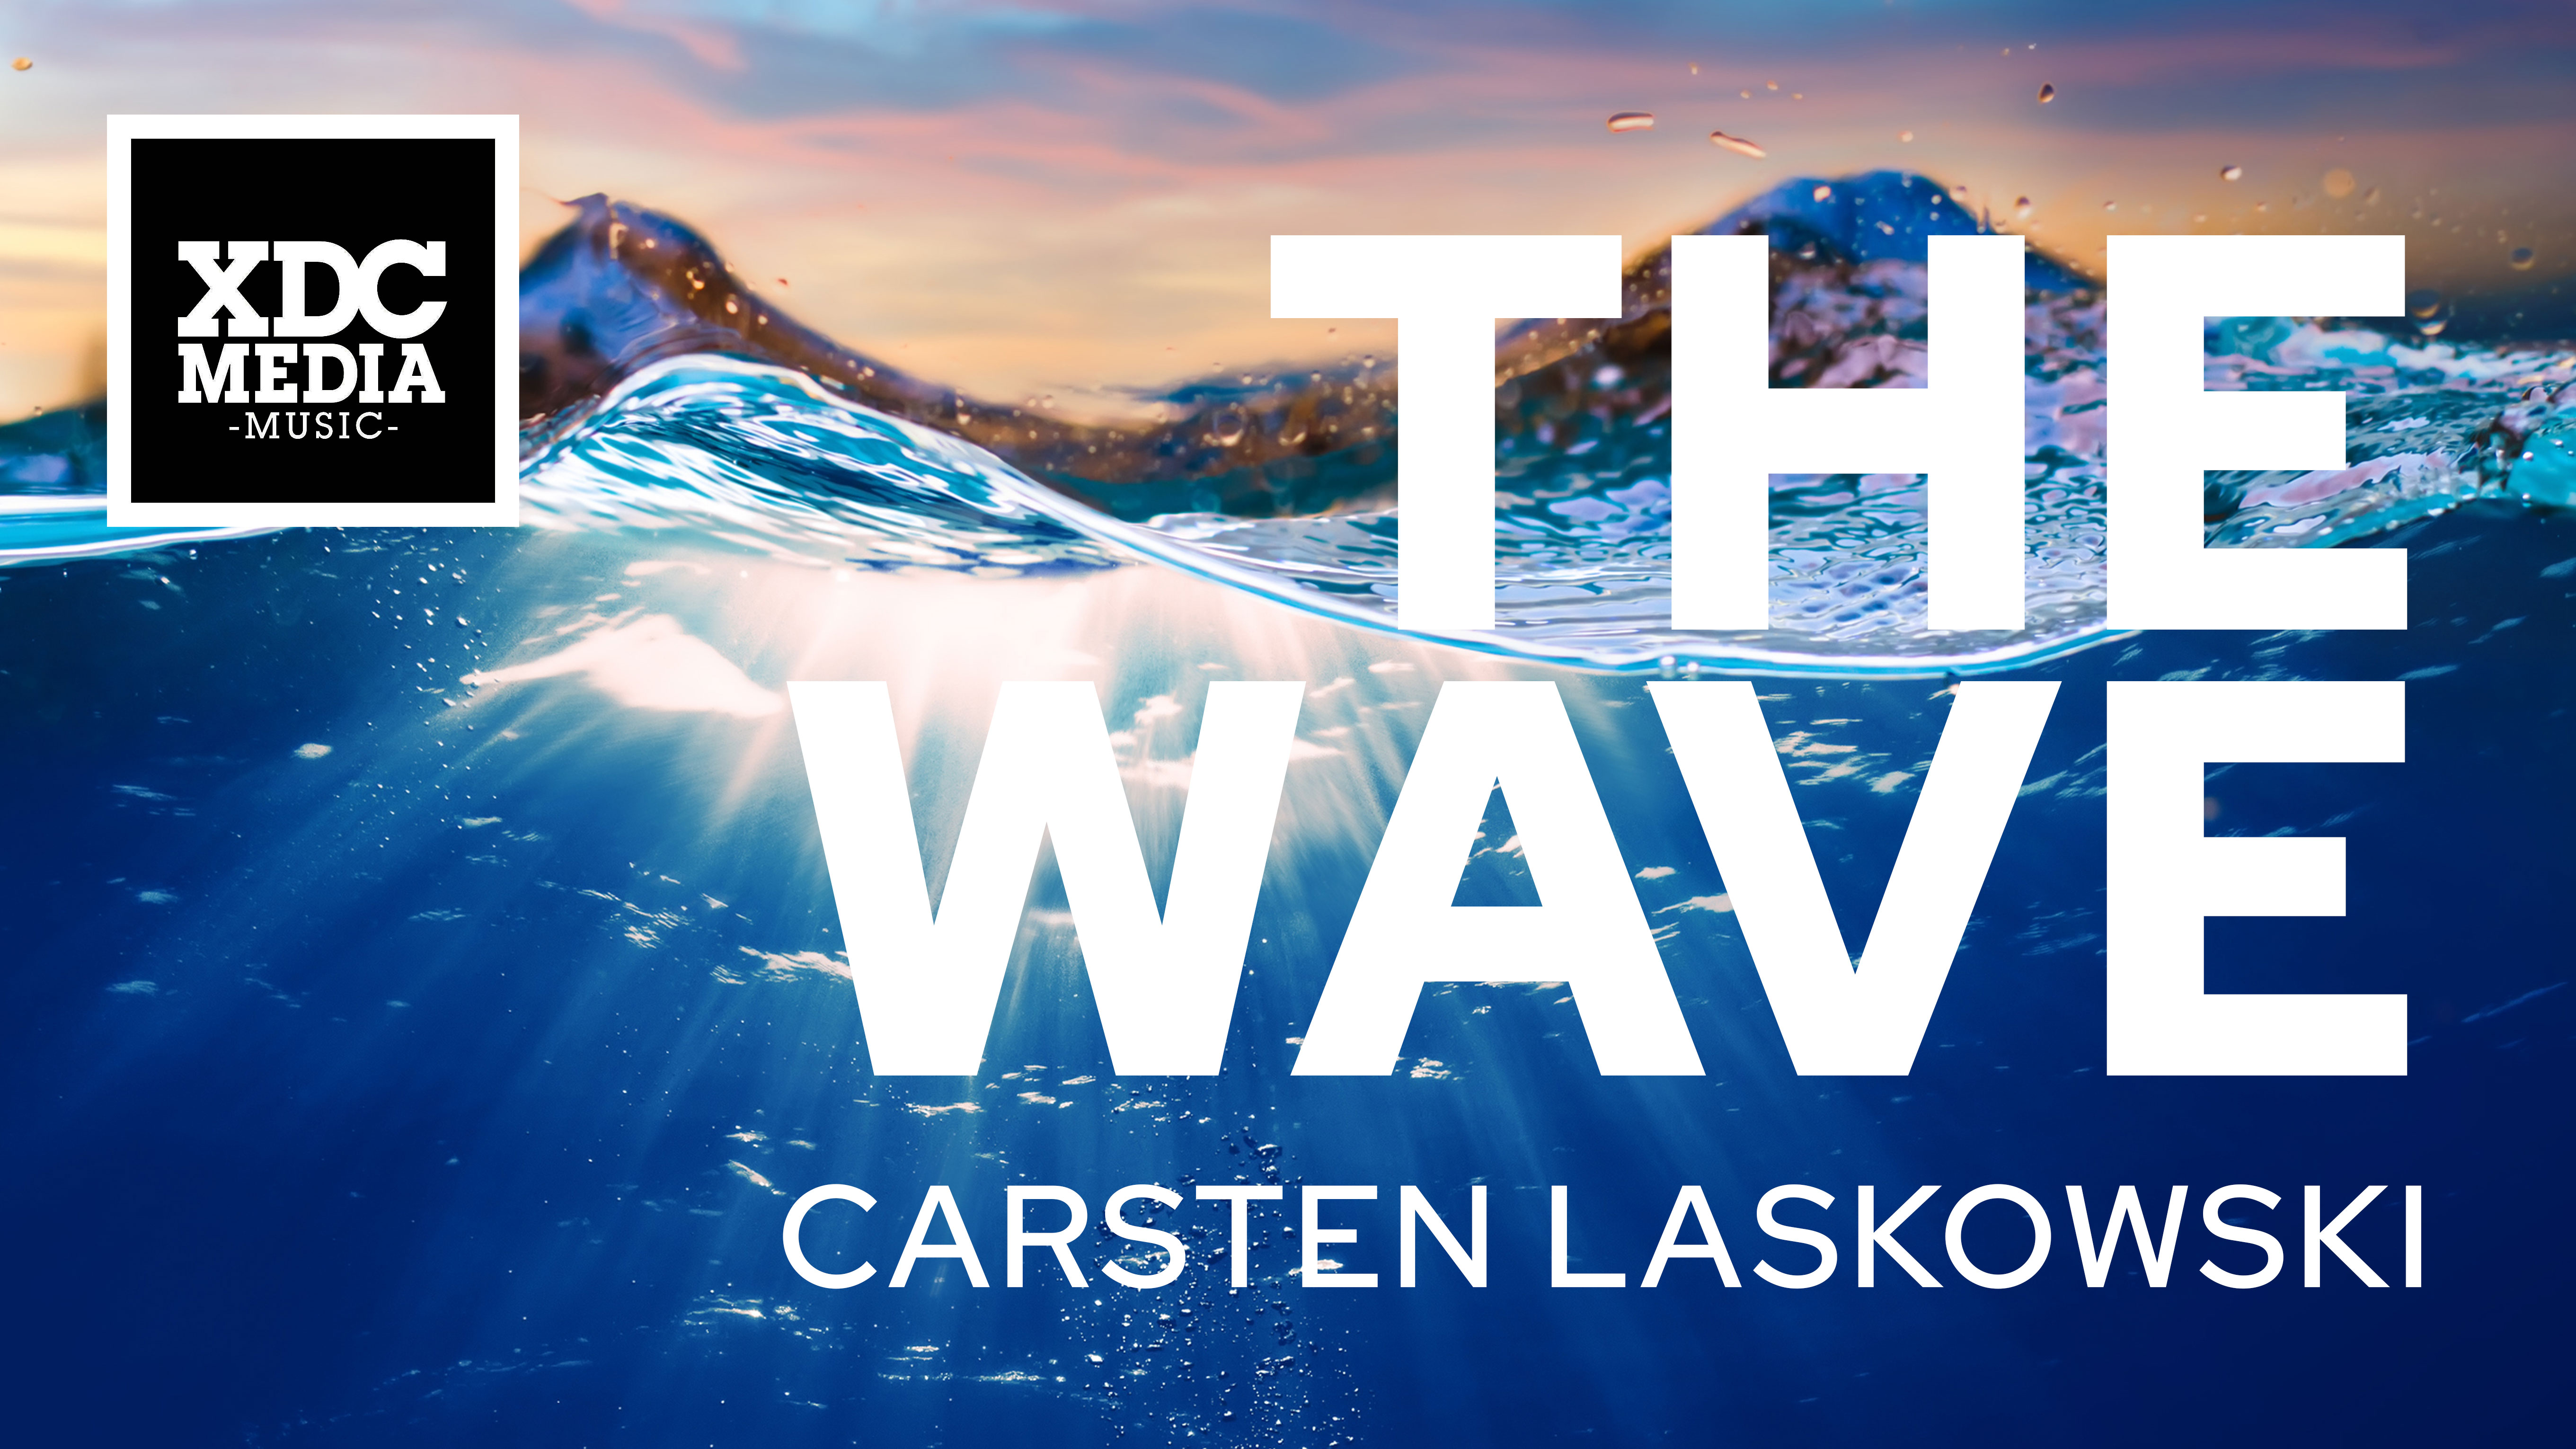 carsten_laskowski_the_wave.jpg